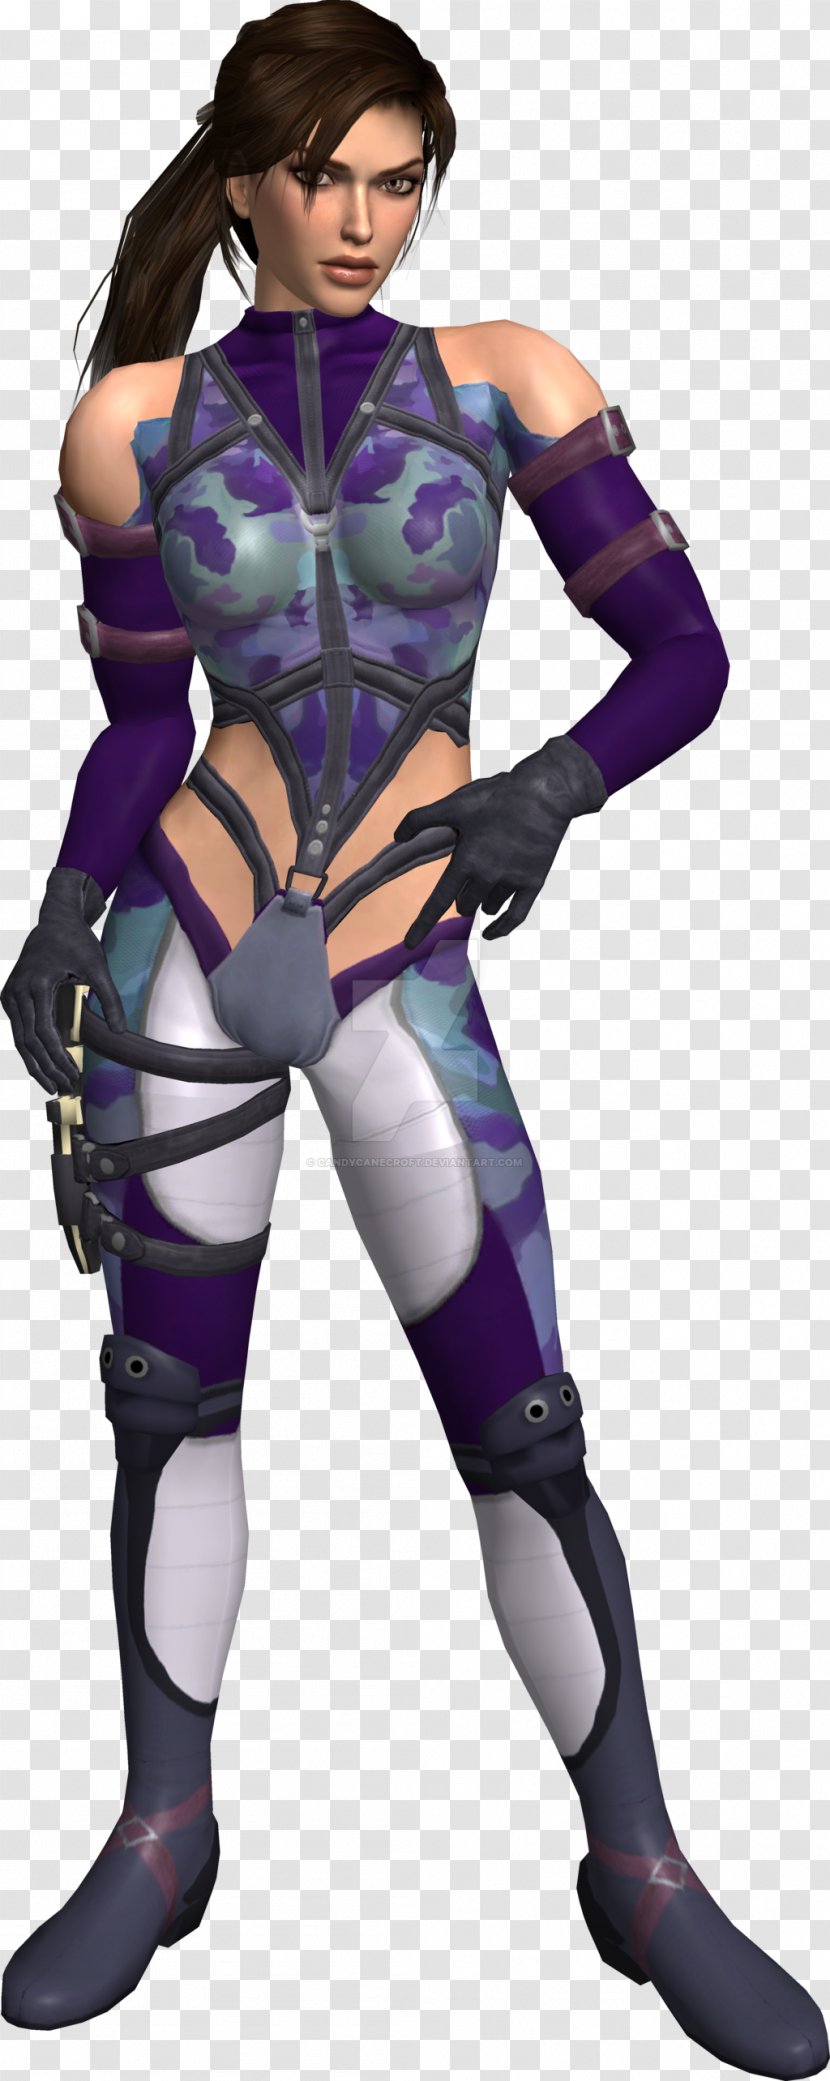 Lara Croft Tomb Raider DeviantArt Character Transparent PNG